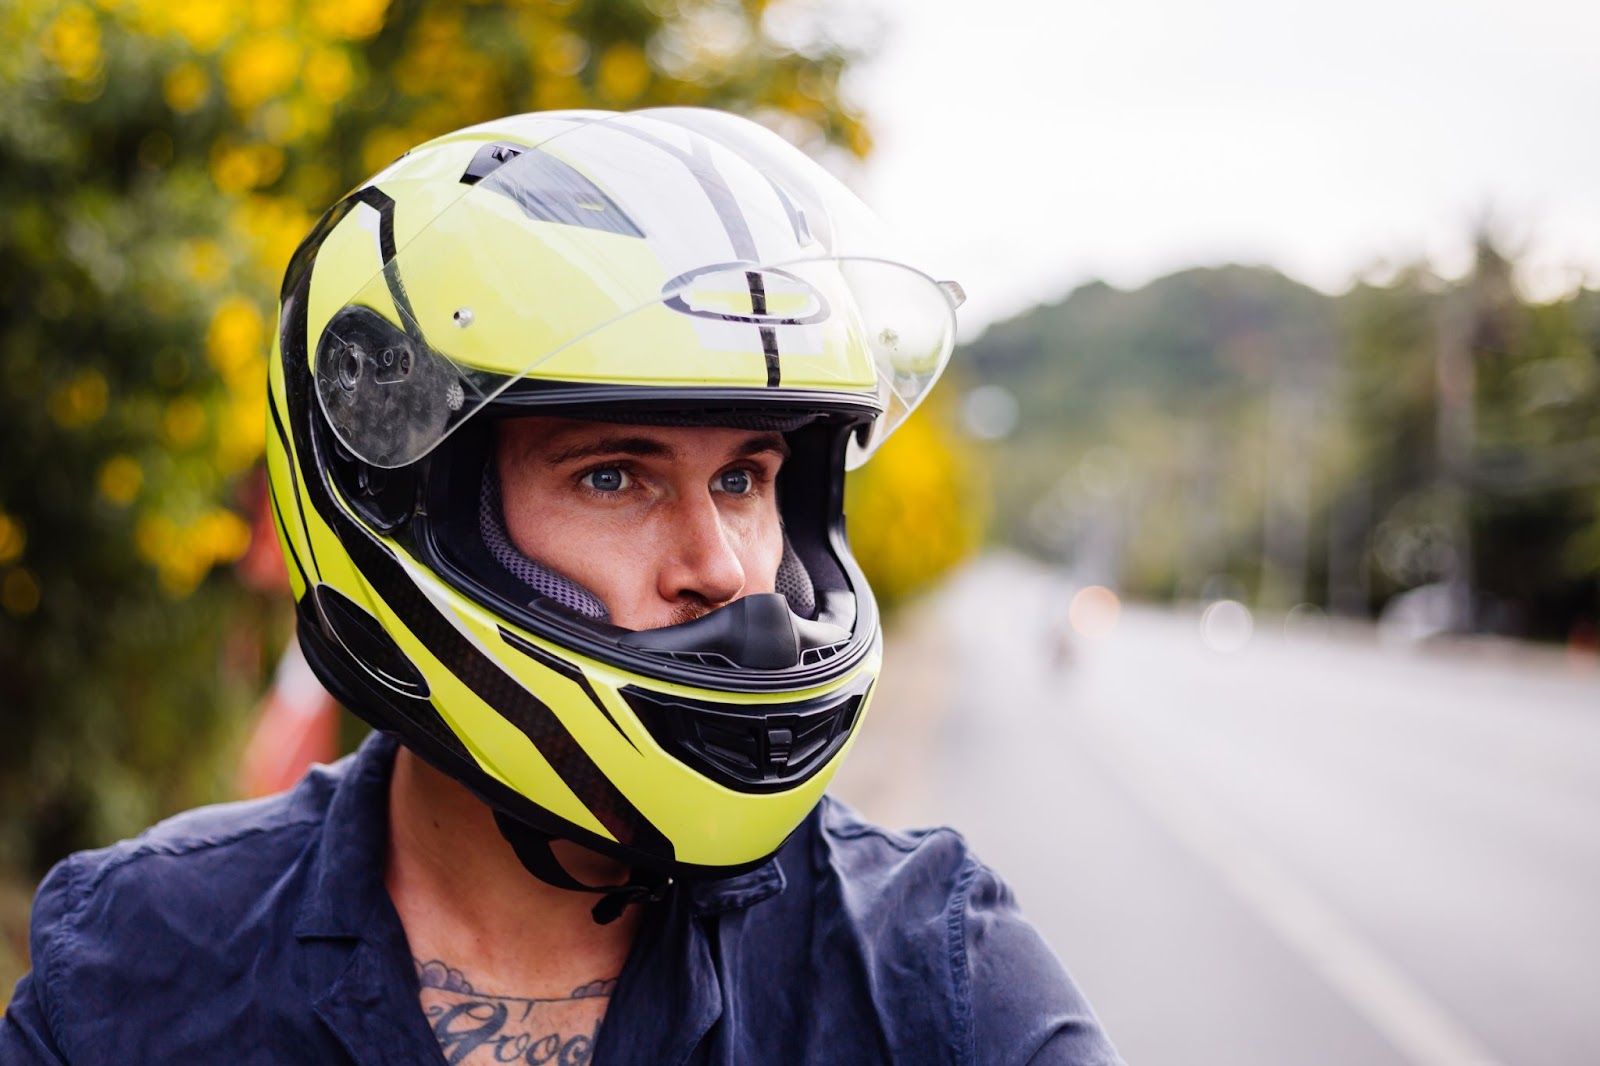 Male biker in yellow helmet